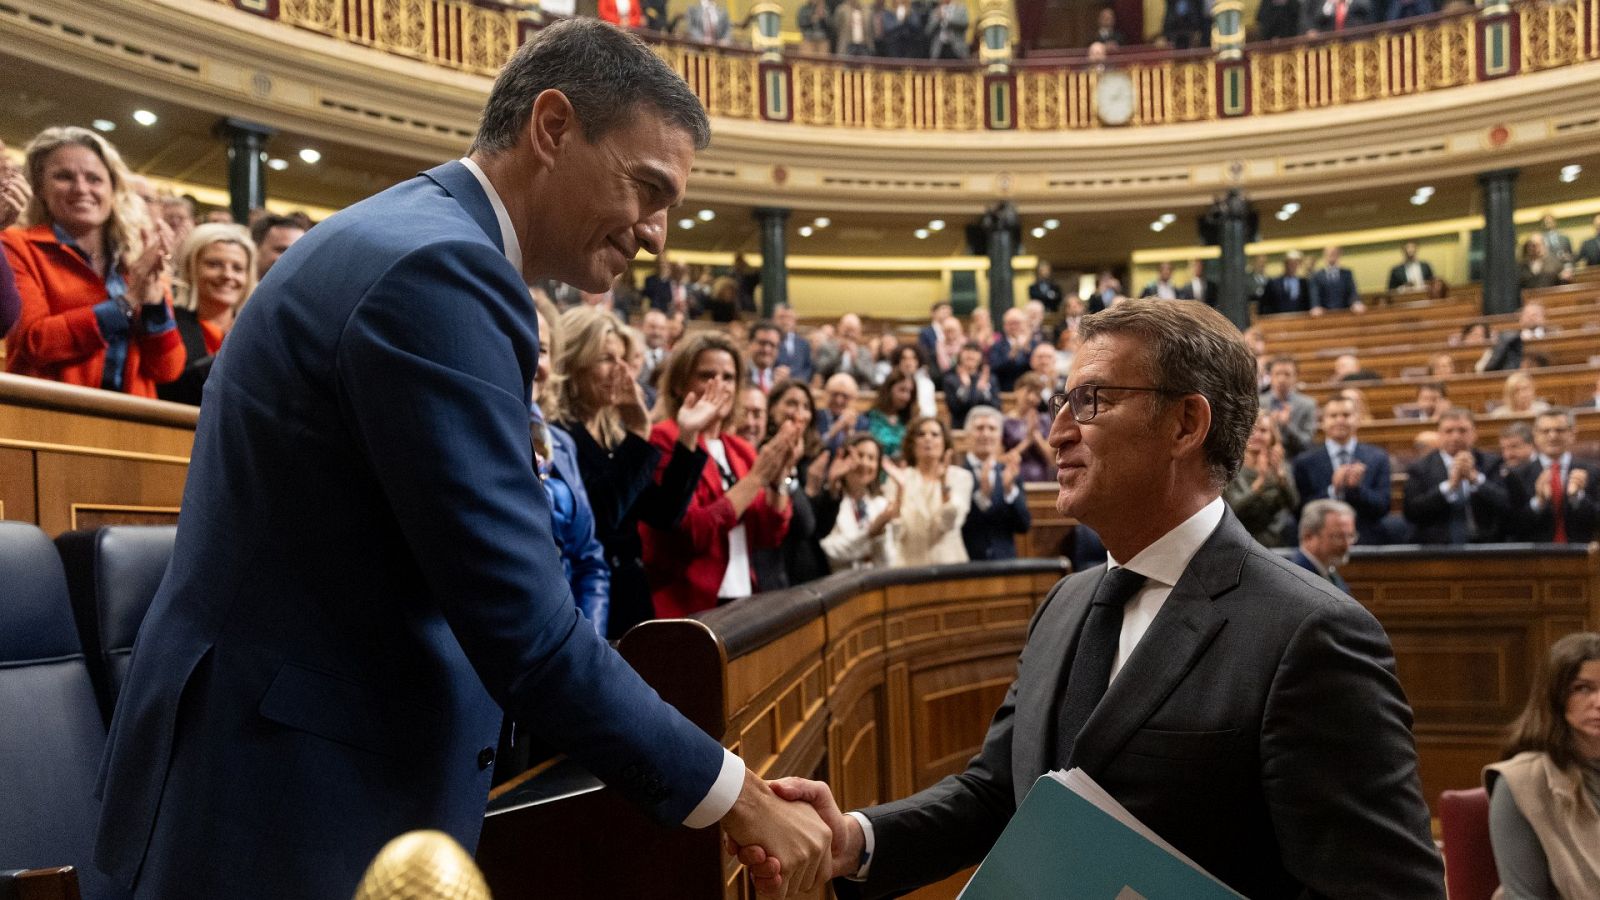 Feijóo al estrecharle la mano a Sánchez tras su reelección: "Esto es una equivocación"